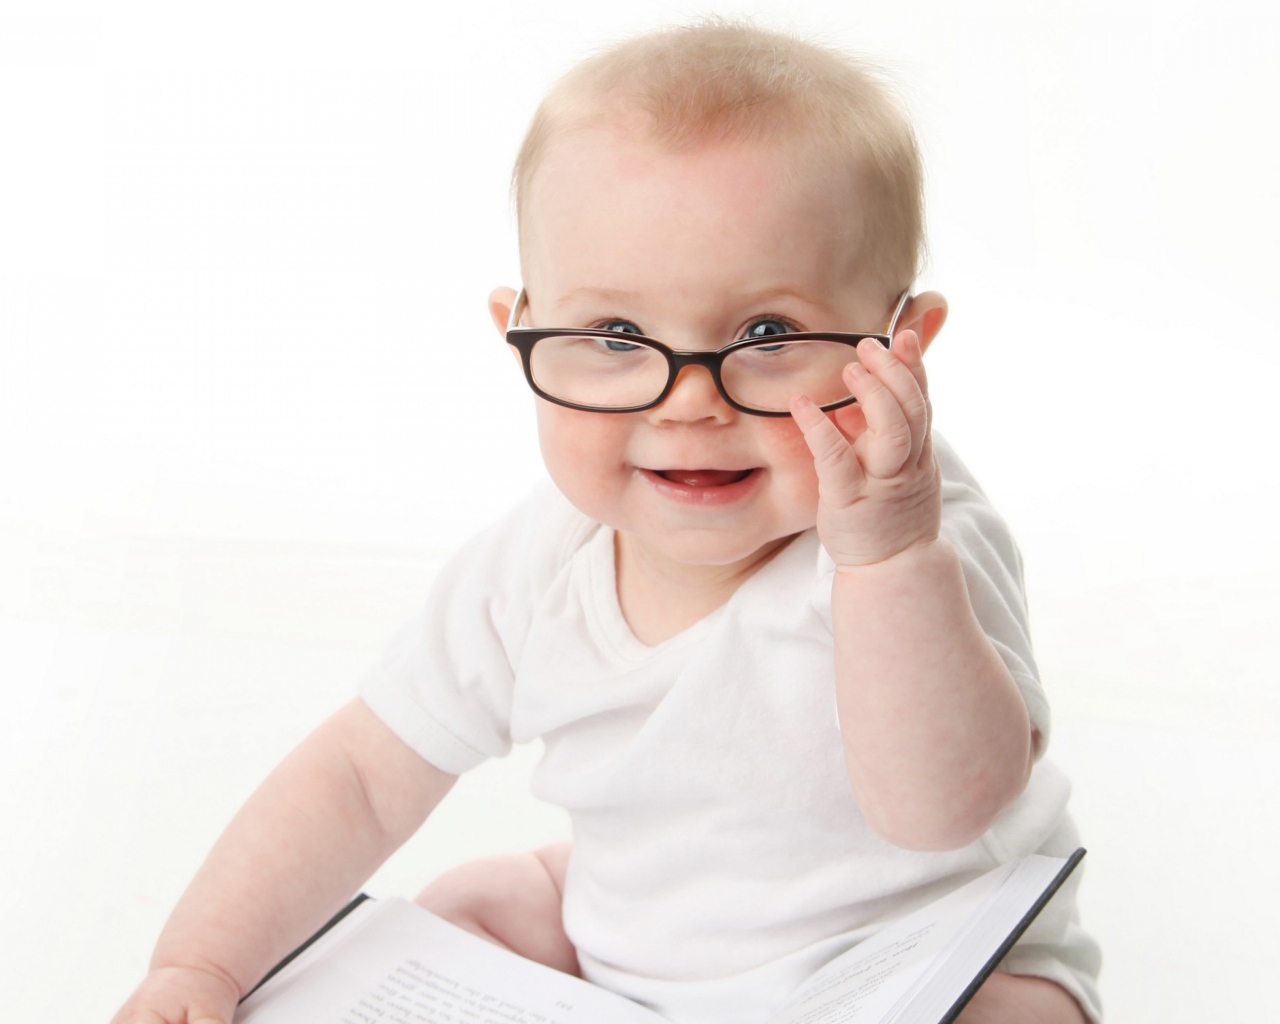 Забавный малыш в очках на белом фоне